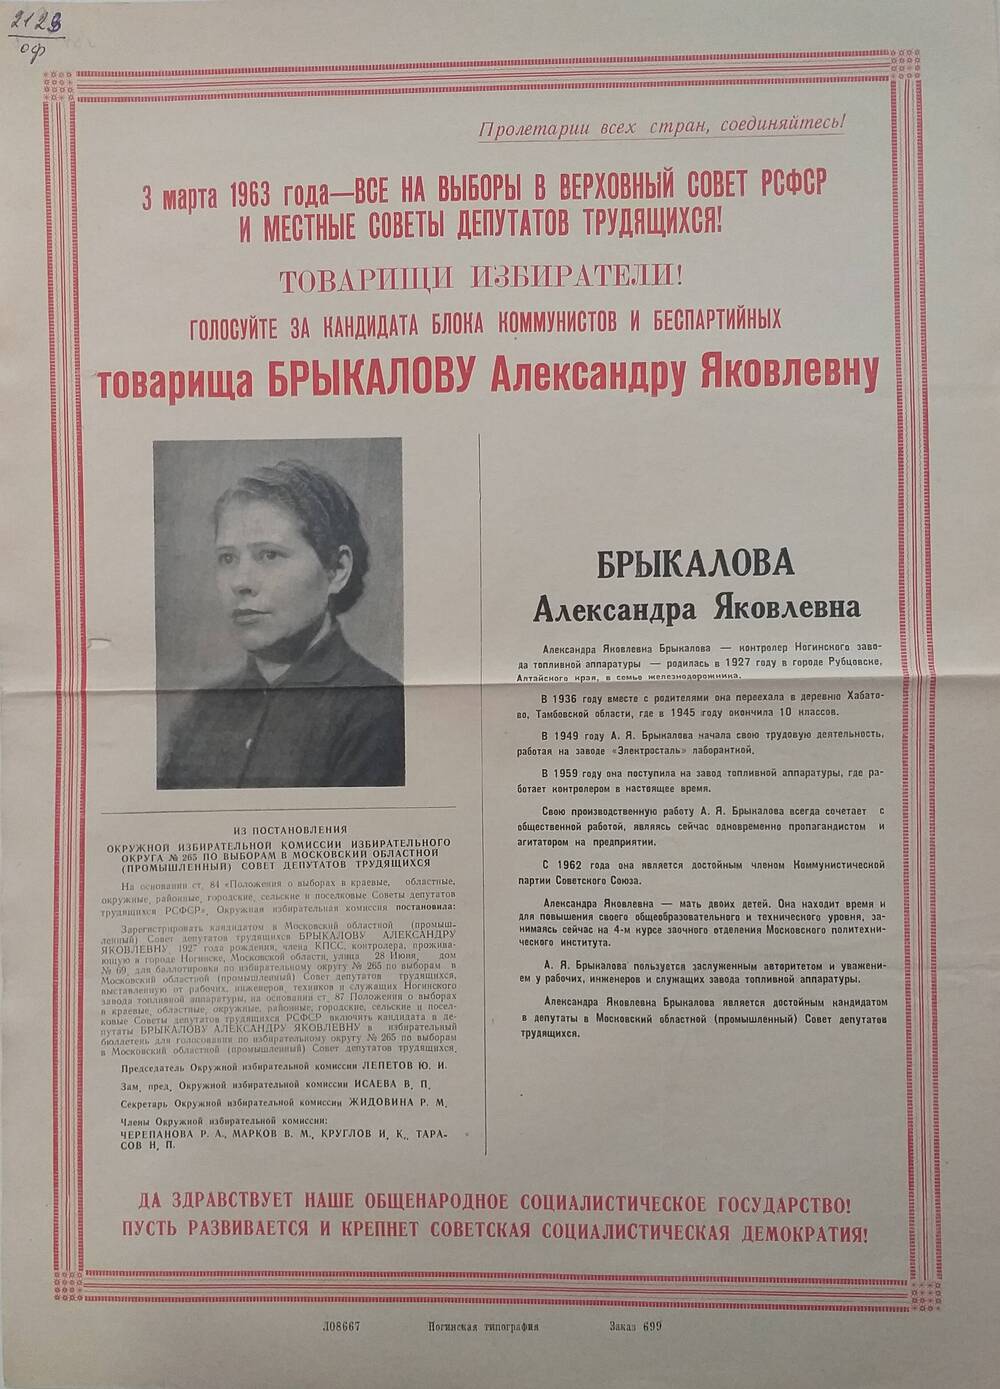 Плакат Призыв к голосованию  на выборах 3 марта 1963 года за товарища Брыкалову Александру Яковлевну - контролёра Ногинского завода топливной аппаратуры, 1963 год.